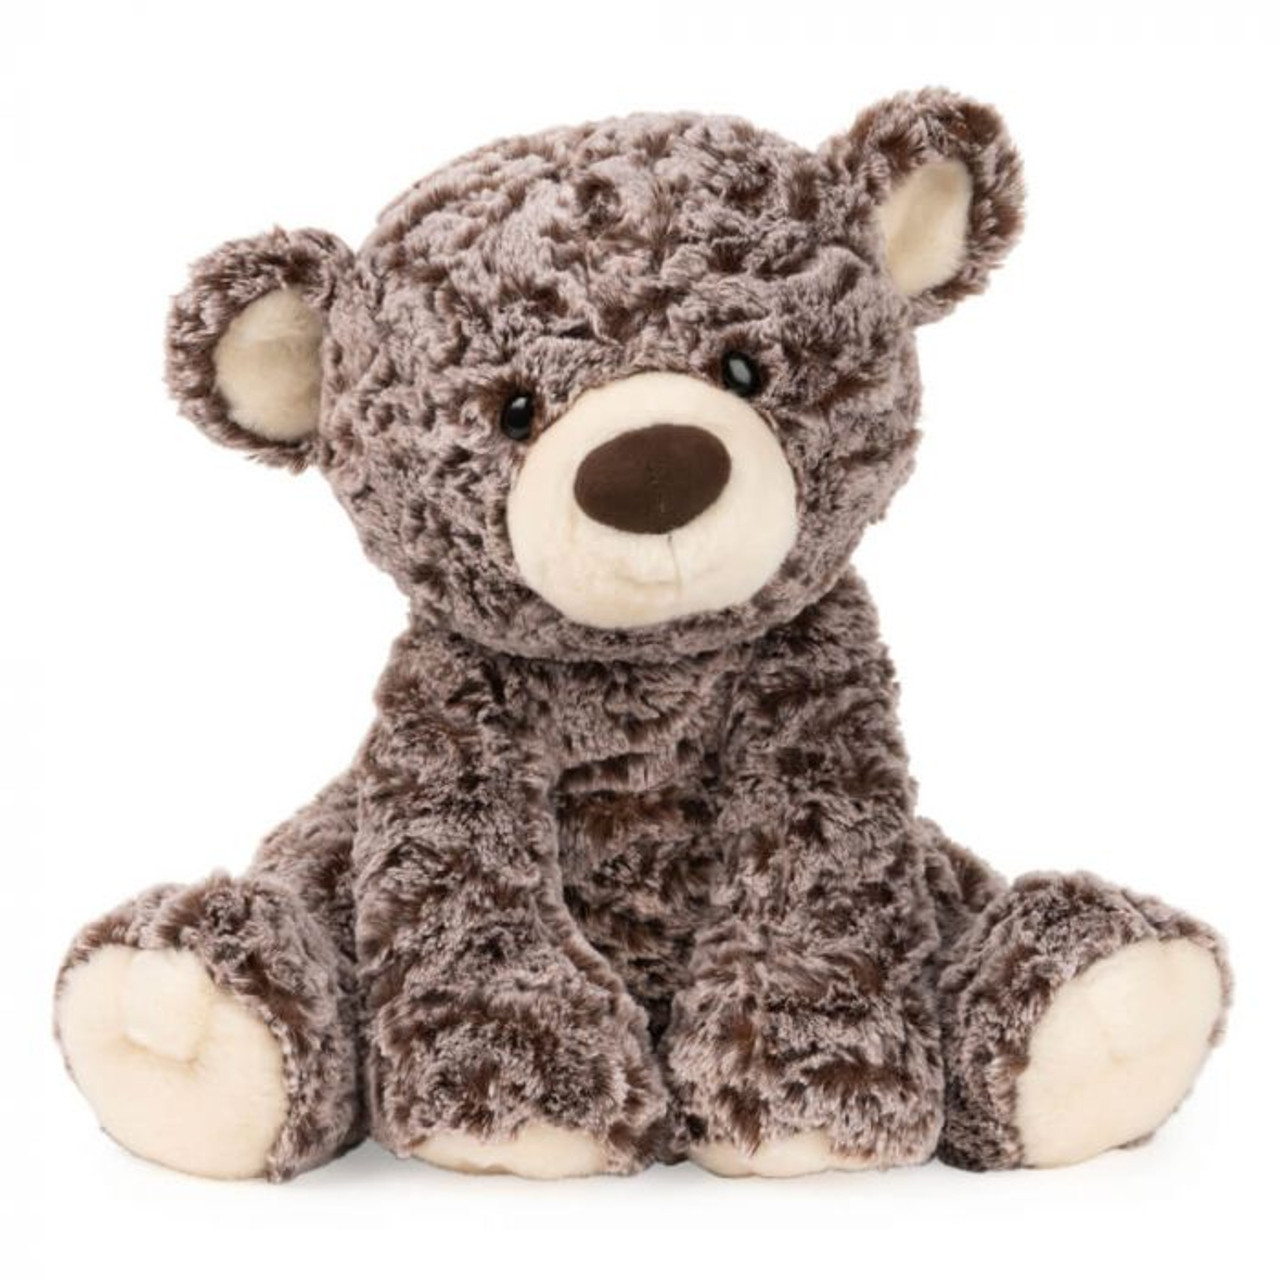 Knuffel "Hug" Teddy Bear, Gund 30cm EAN 436417